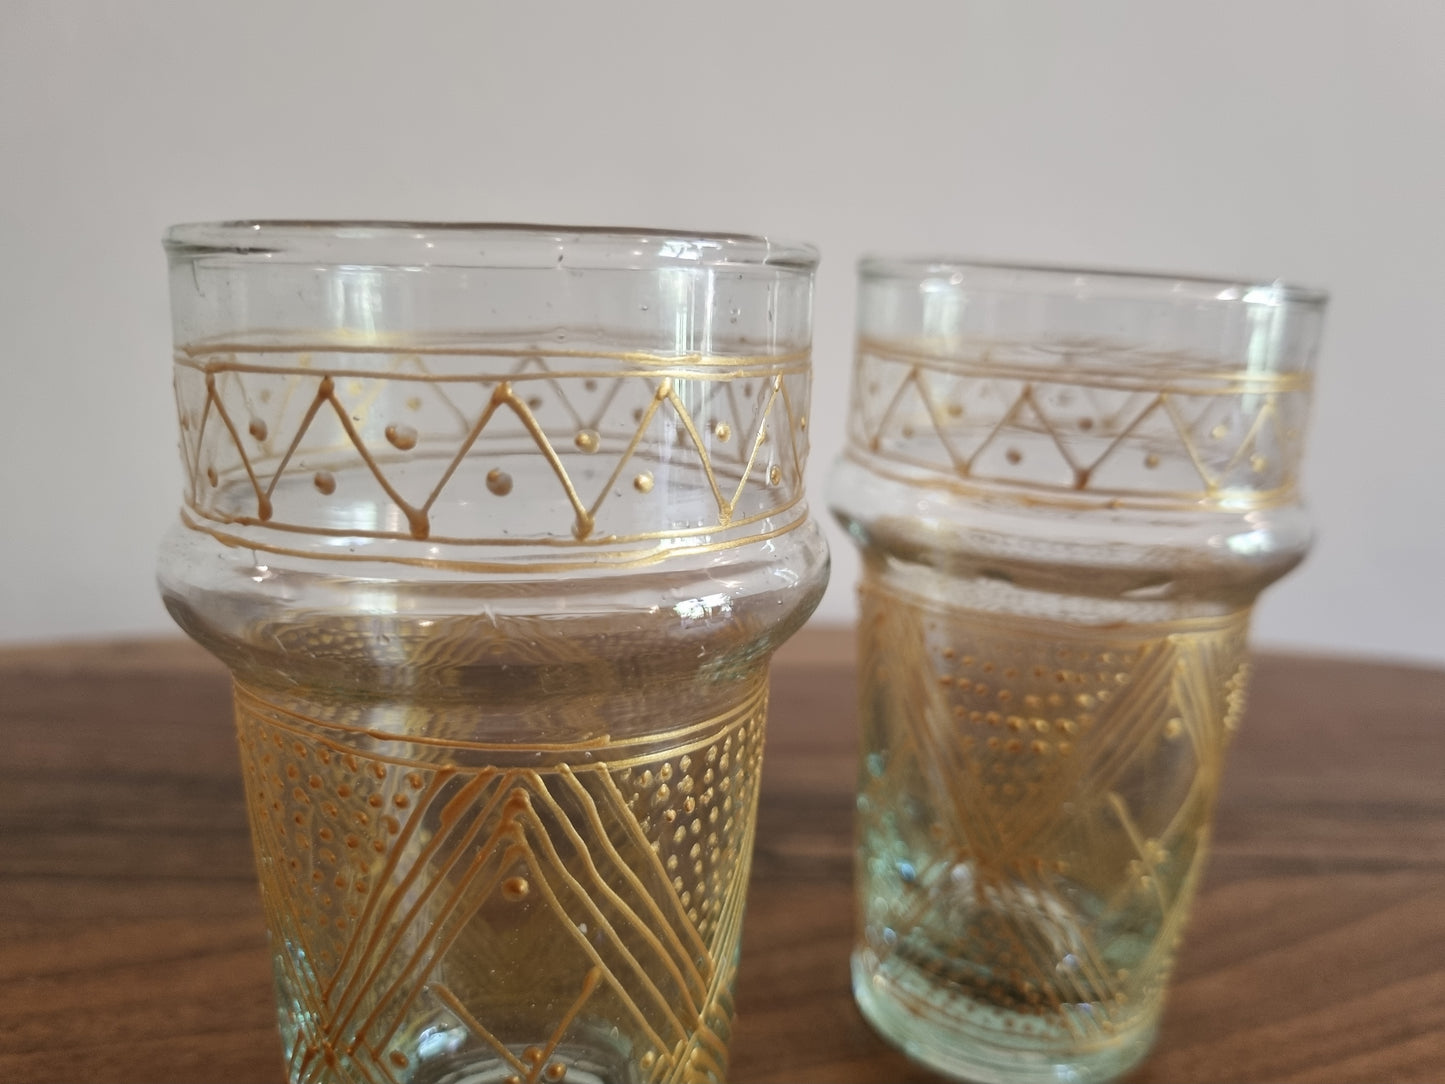 Six verres beldi marocains traditionnels, présentant un design unique et un savoir-faire artisanal.